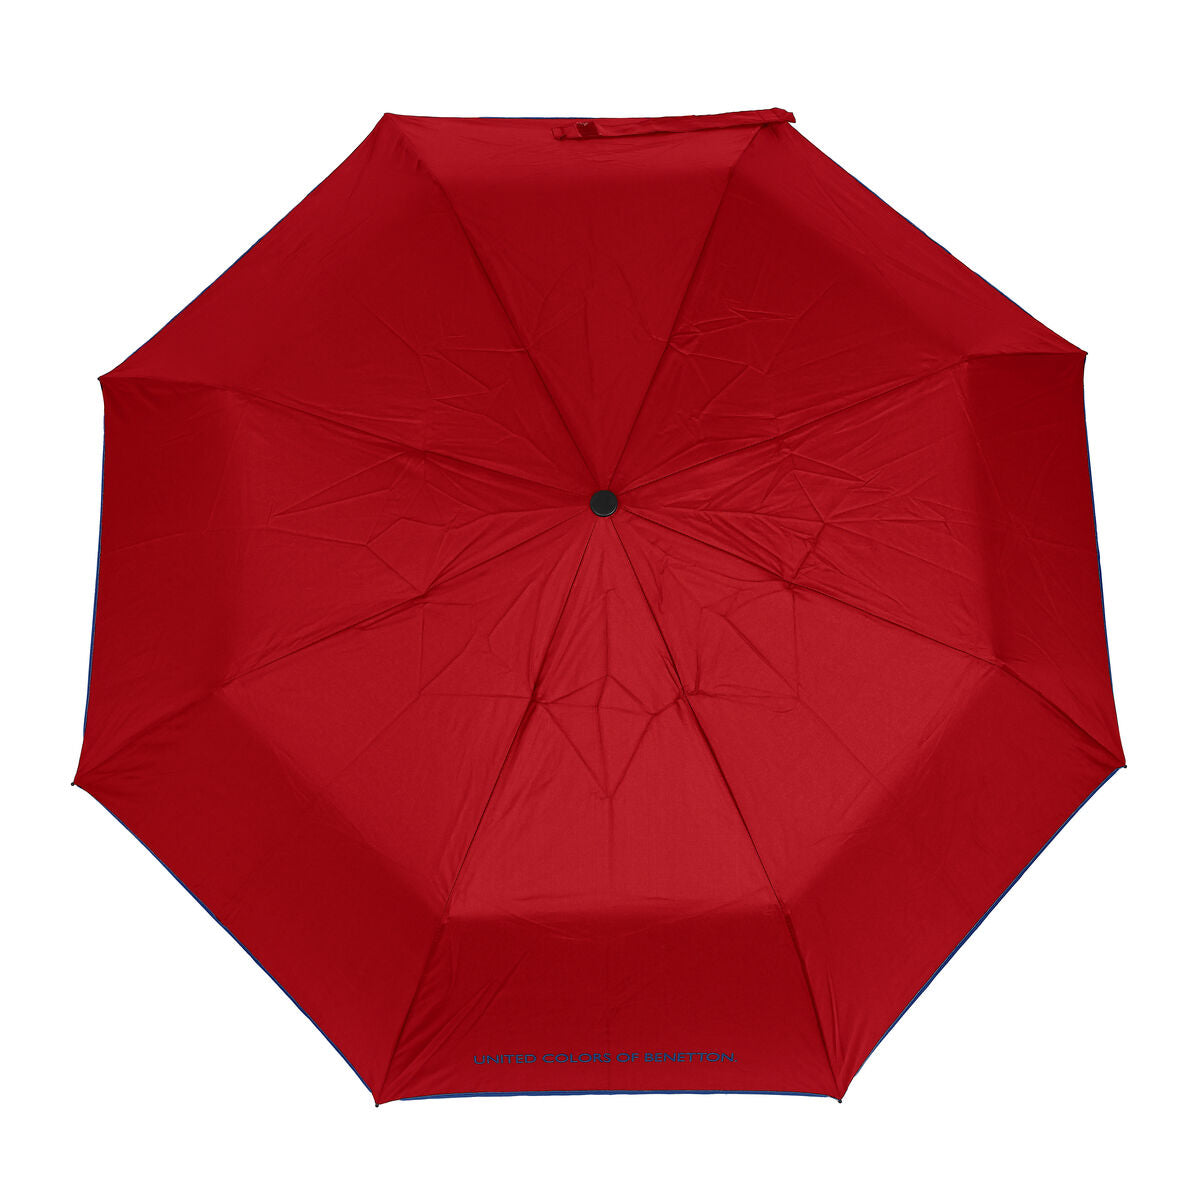 Opvouwbare Paraplu Benetton Rood (Ø 93 cm)